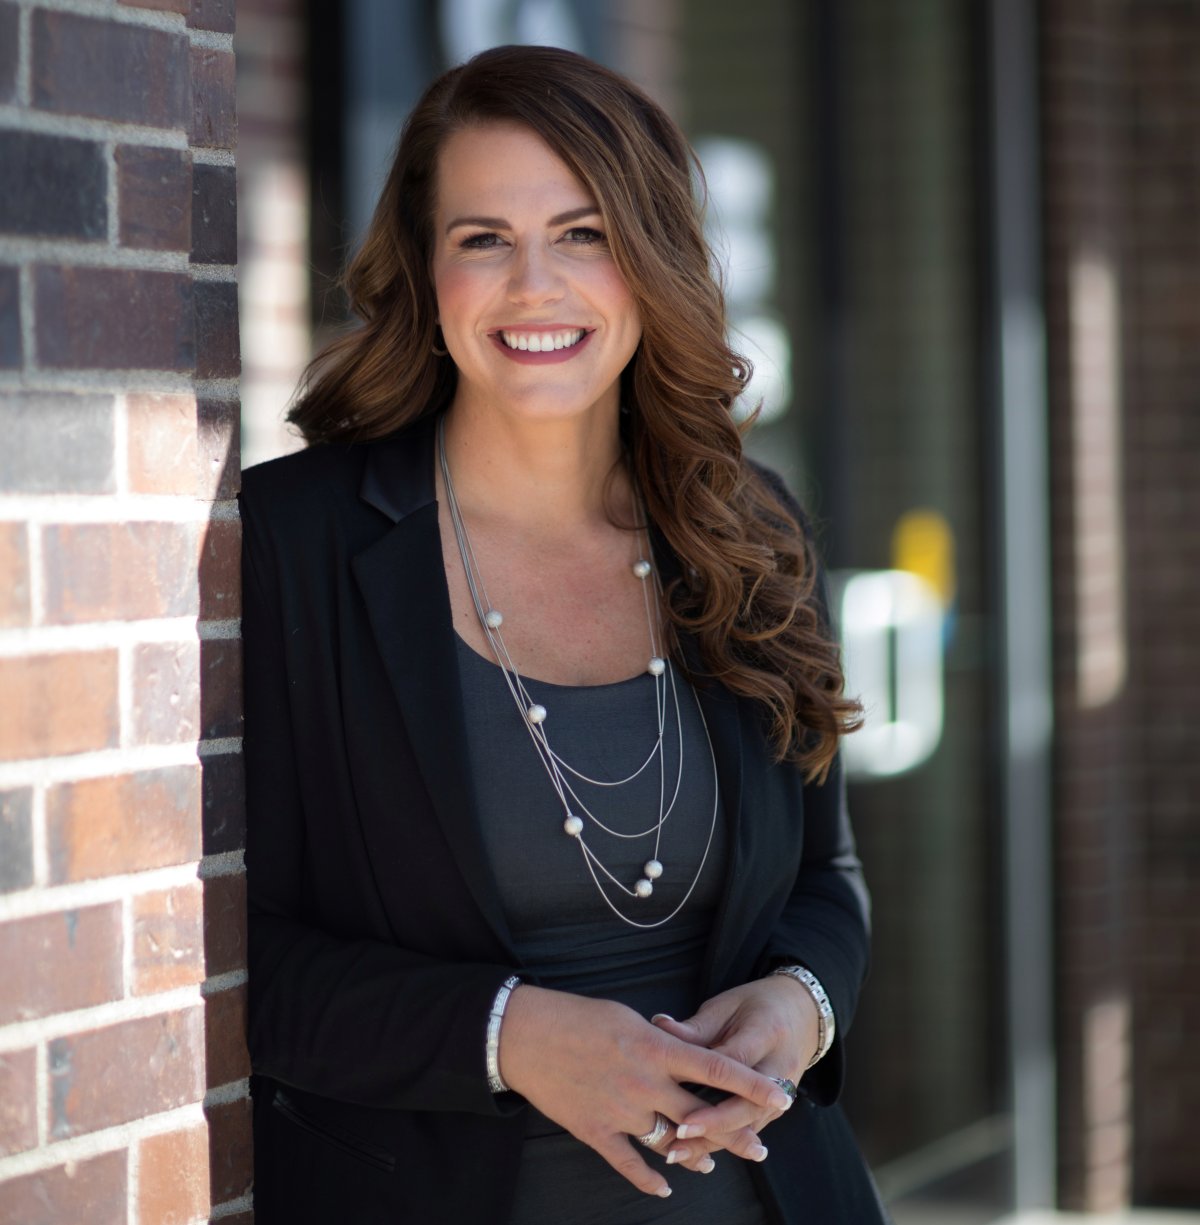 Business owner Renee Wasylyk of Kelowna was named one of Canada’s top 100 women this week.